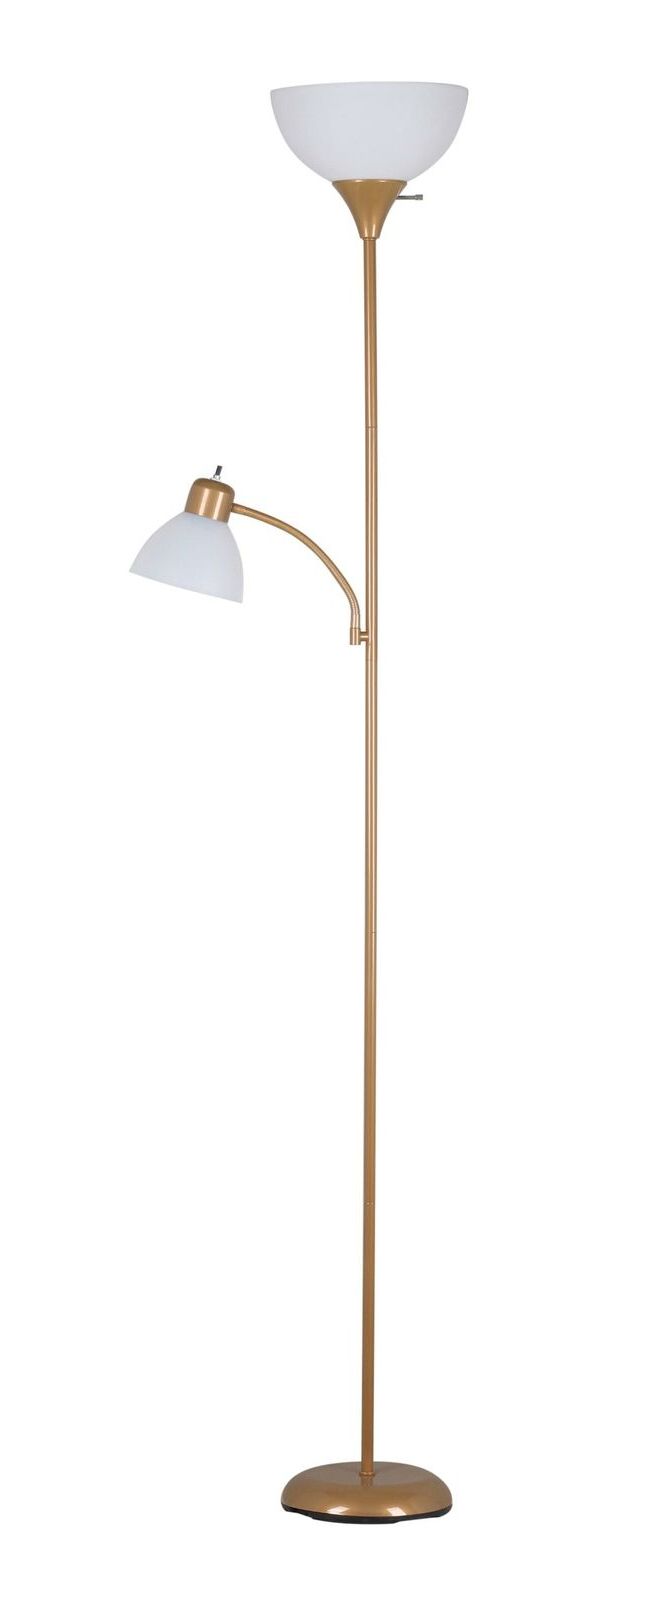 72 Inch Floor Lamp Reading Light Metal Uplight Stand Living Room Bedroom |  Ebay Regarding 72 Inch Floor Lamps (View 13 of 20)